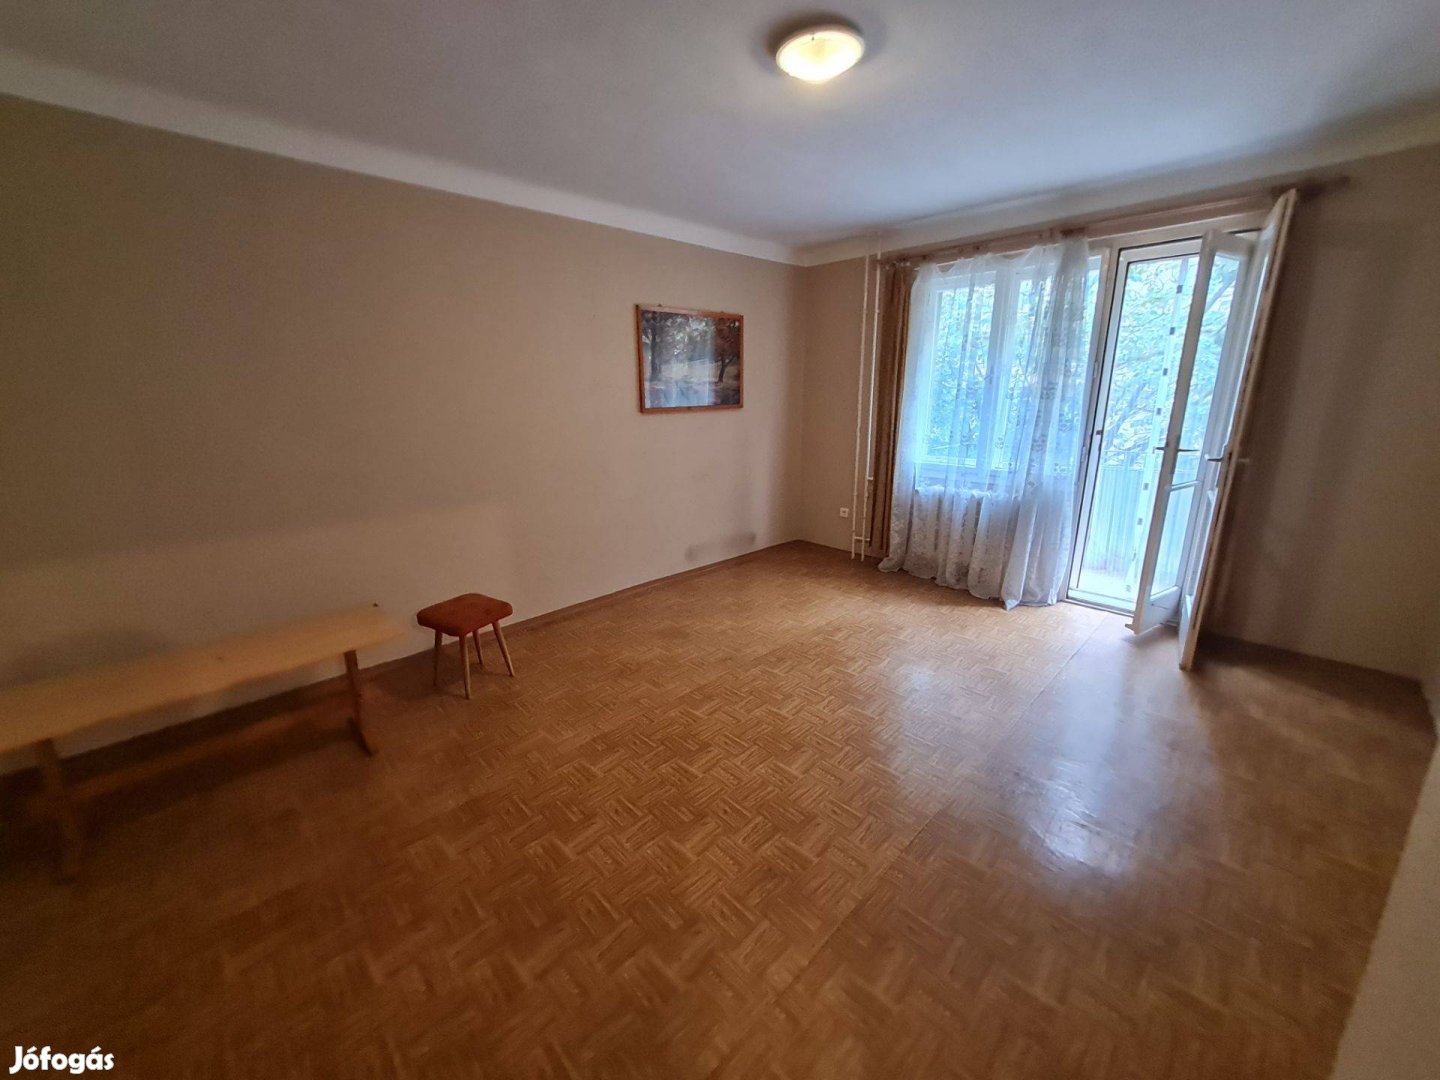 Eladó Dunaújvárosban egy 35nm-es, 1 szobás, 2. emeleti tégla lakás